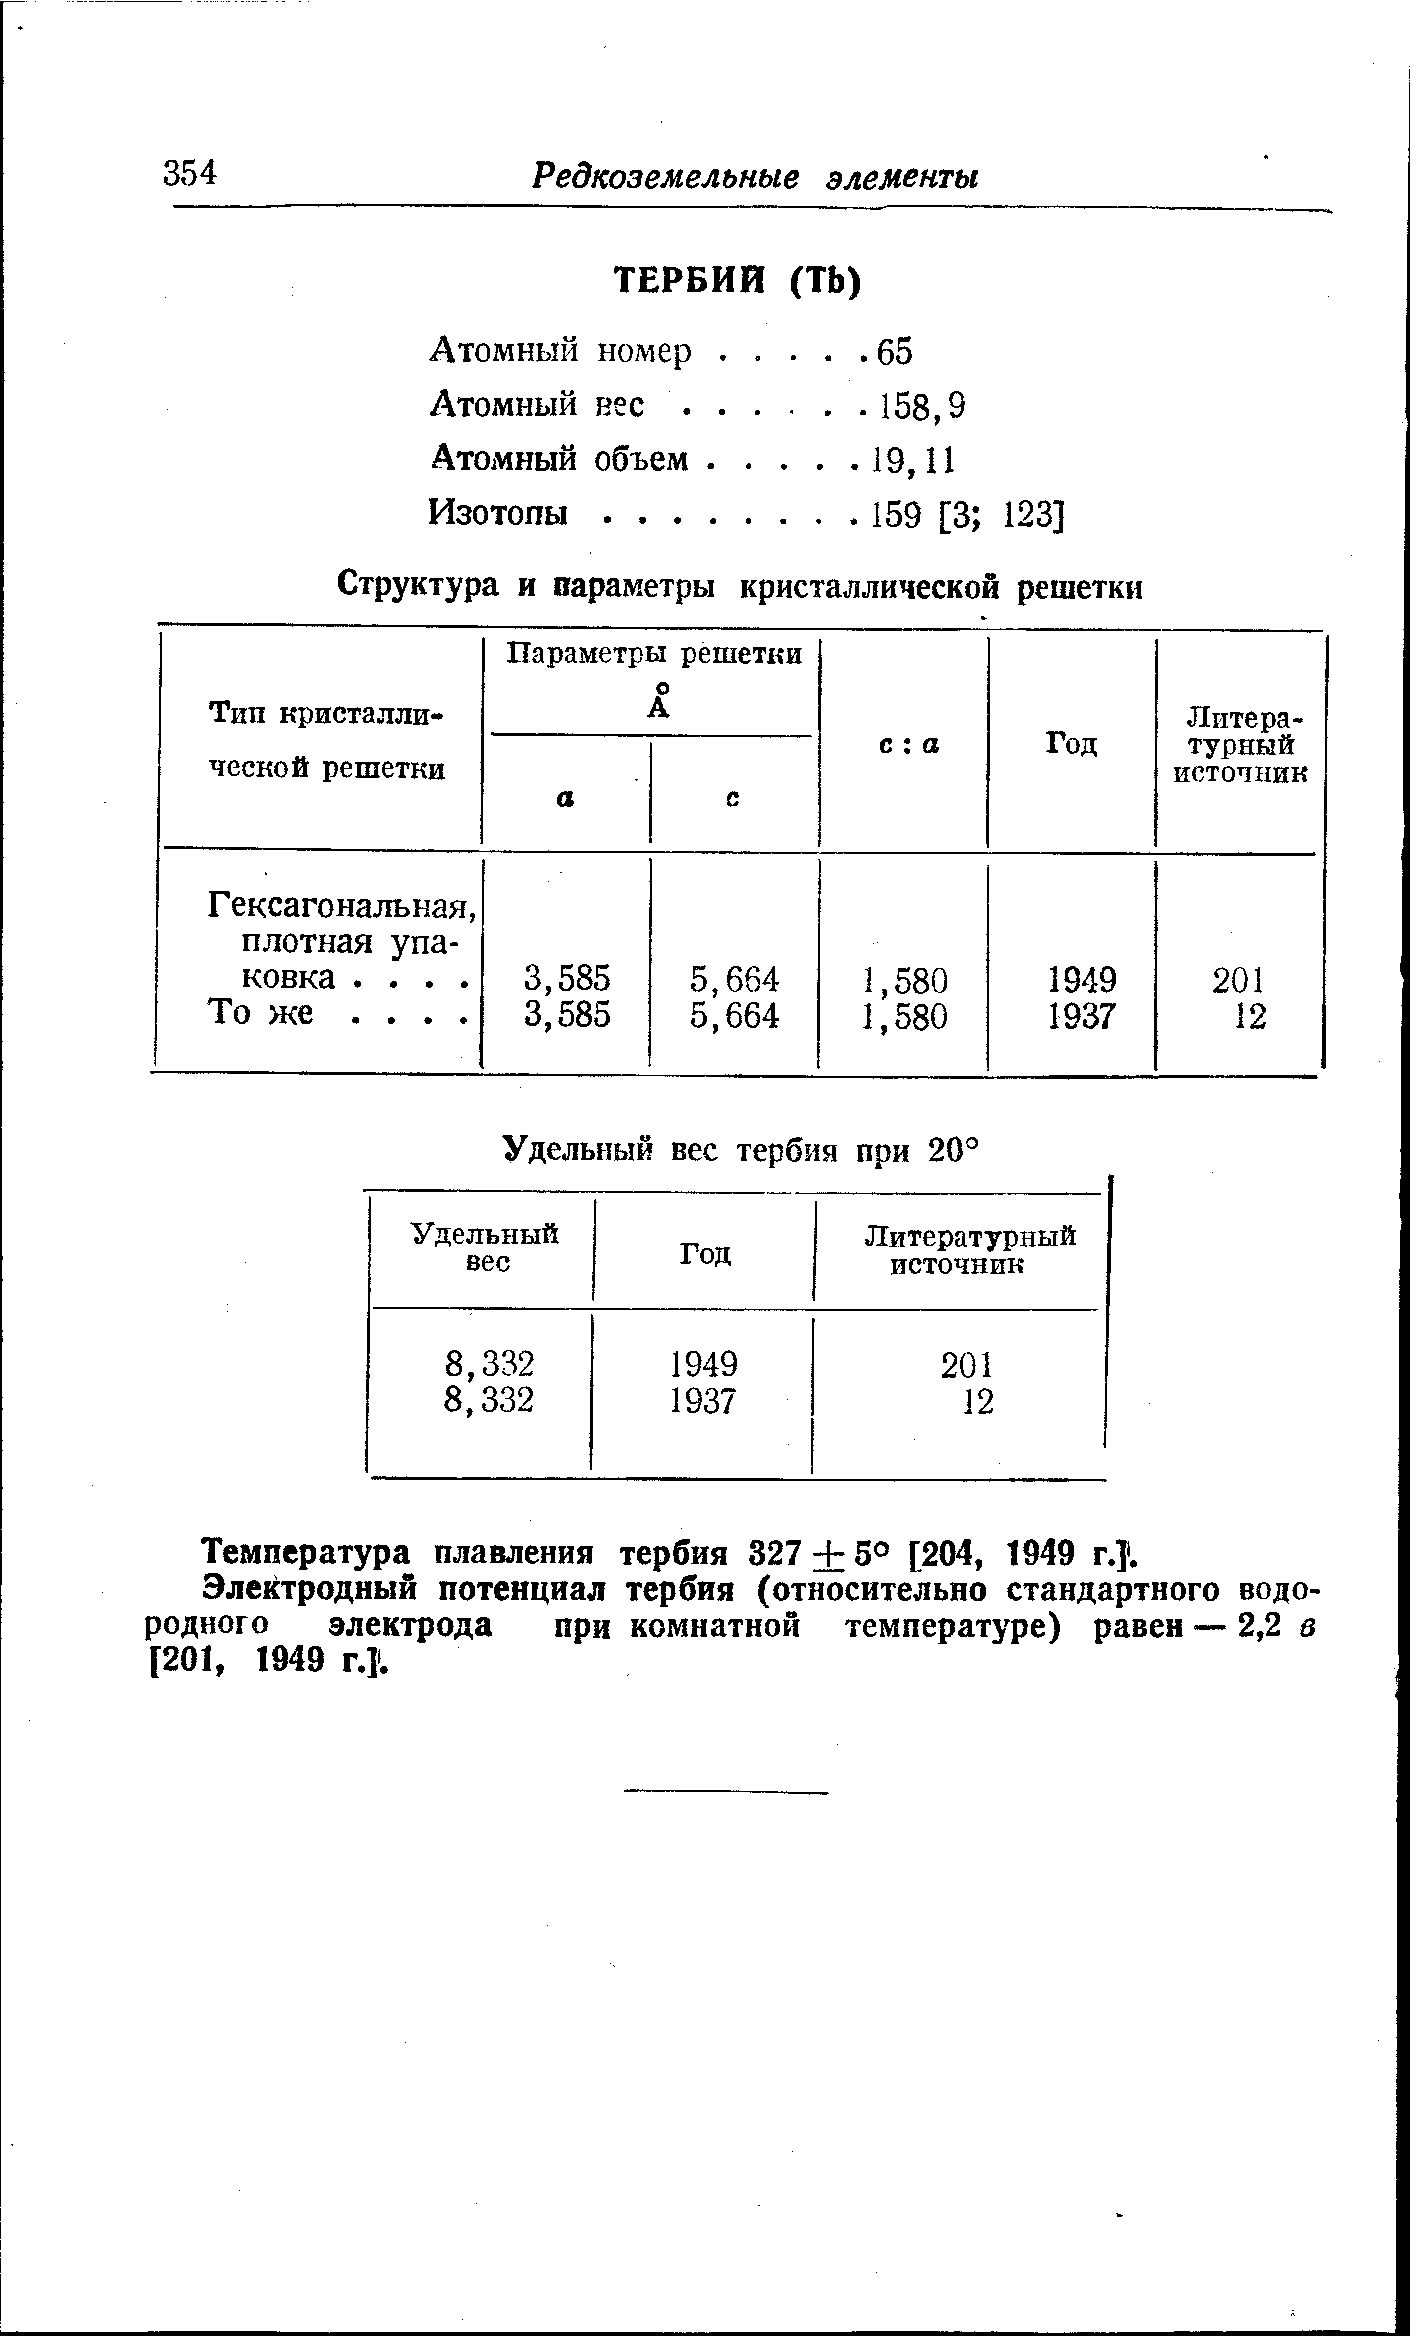 Температура плавления тербия 327 + 5° [204, 1949 г. . Электродный потенциал тербия (относительно стандартного водородного электрода при комнатной температуре) равен —2,2 з [201, 1949 Г.1.